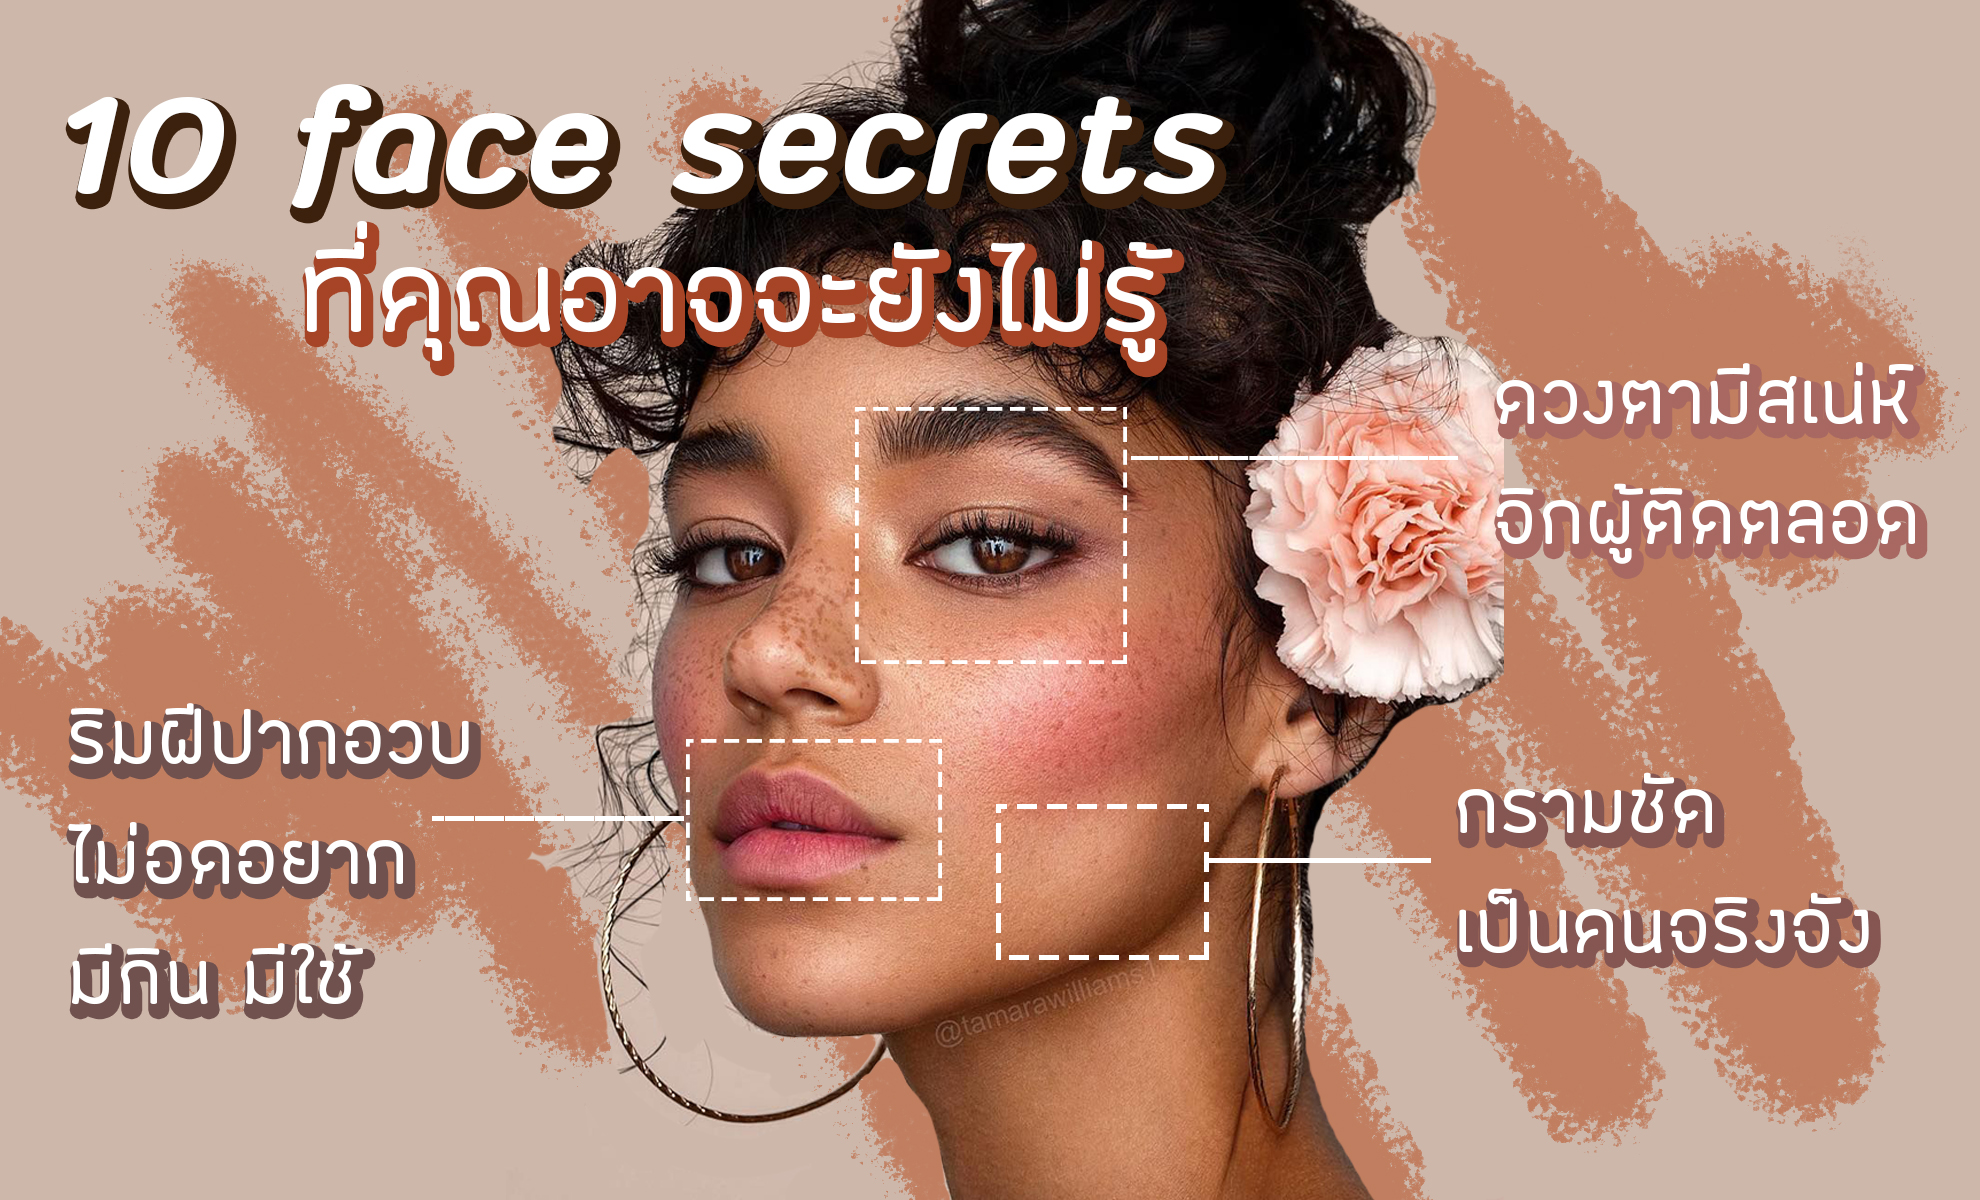 Face secret! 10 ความลับของใบหน้า ในแบบต่างๆ ที่คุณยังไม่เคยรู้